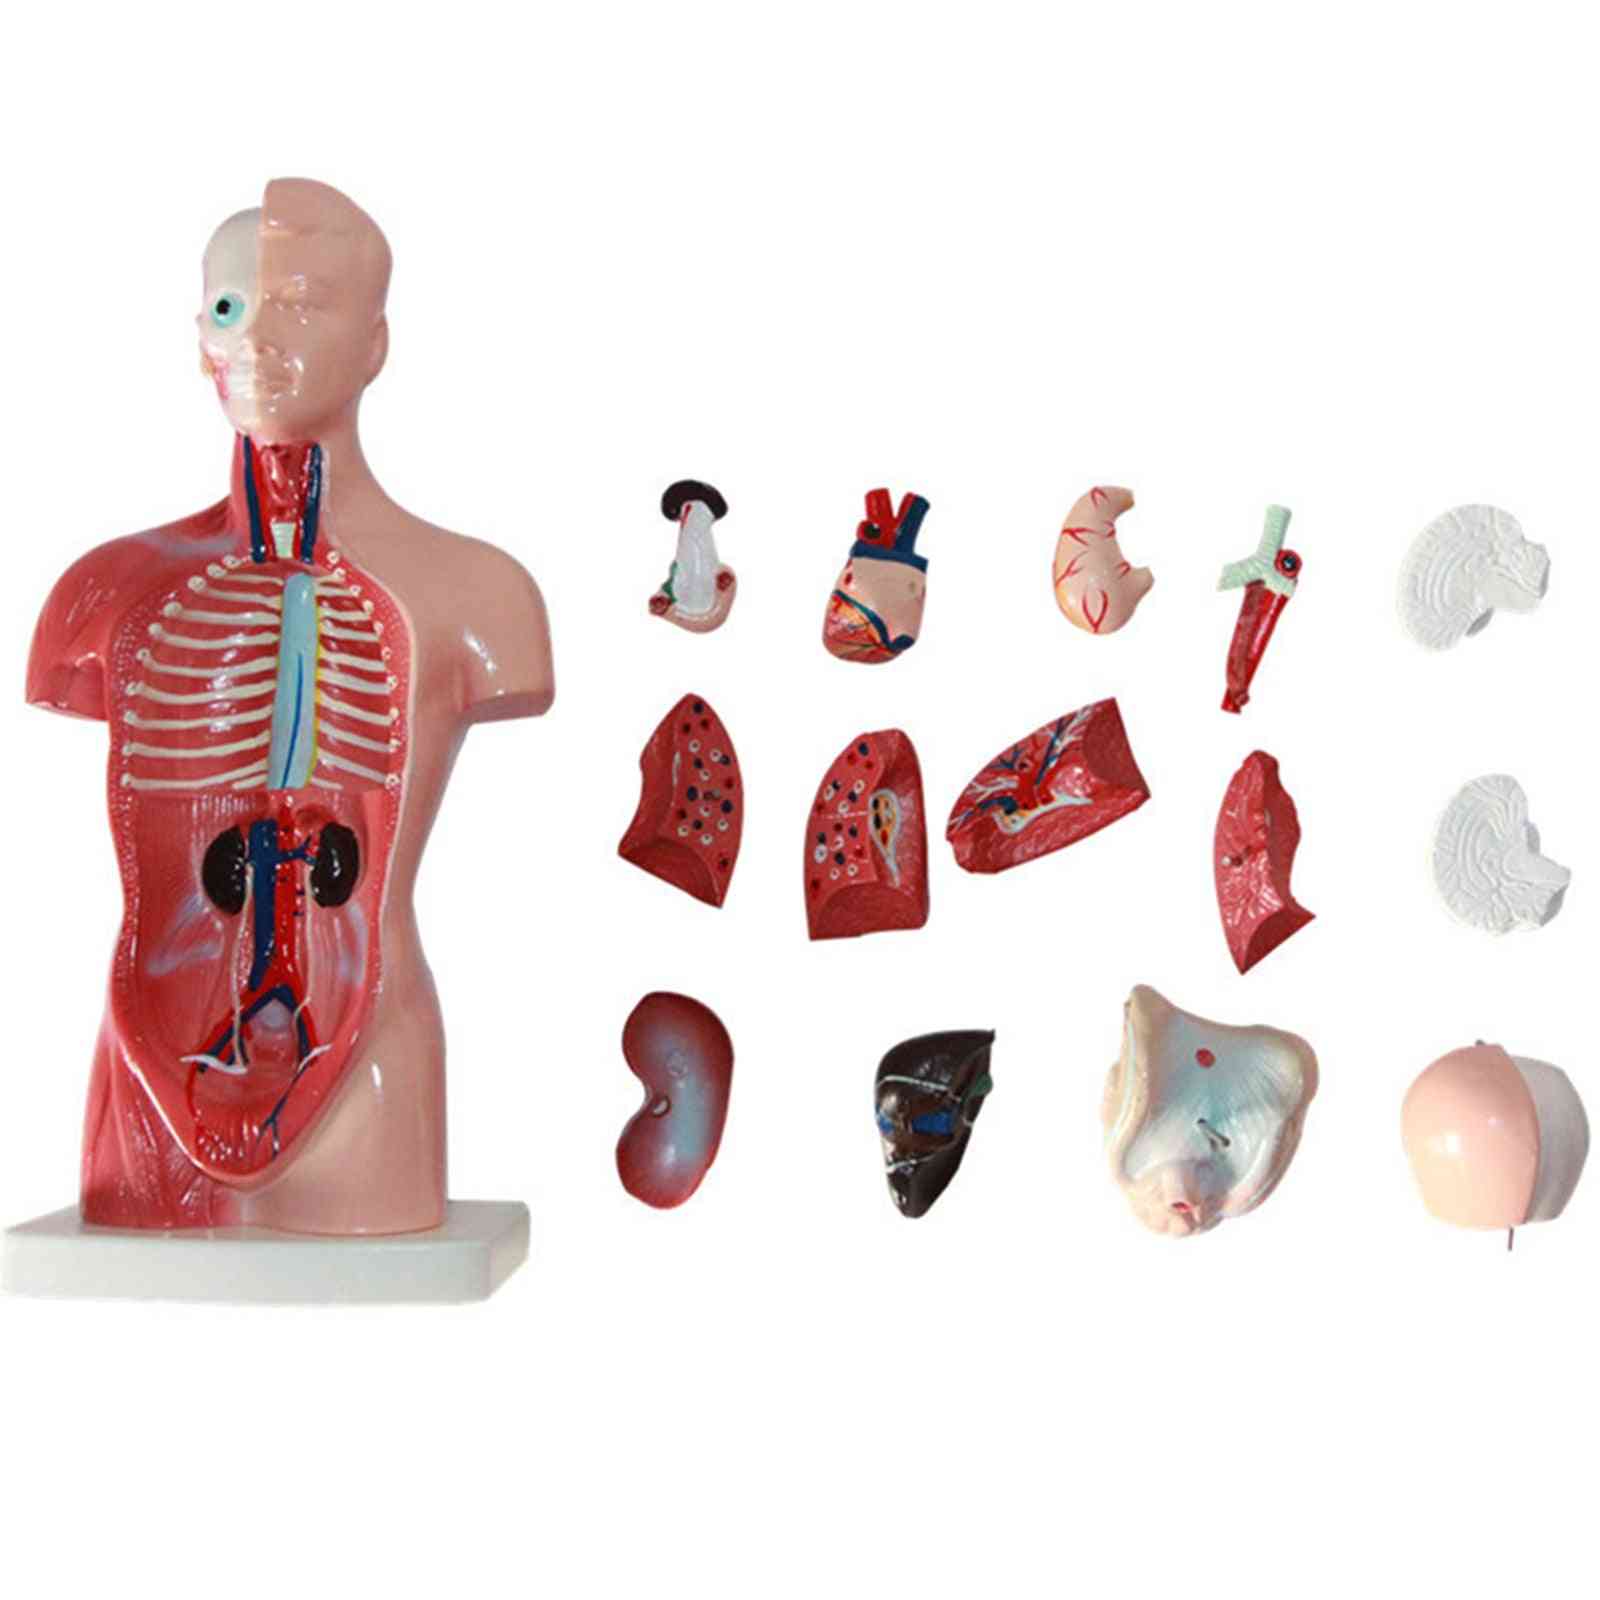 4d model anatomické montáže lidských orgánů pro výuku vzdělávání